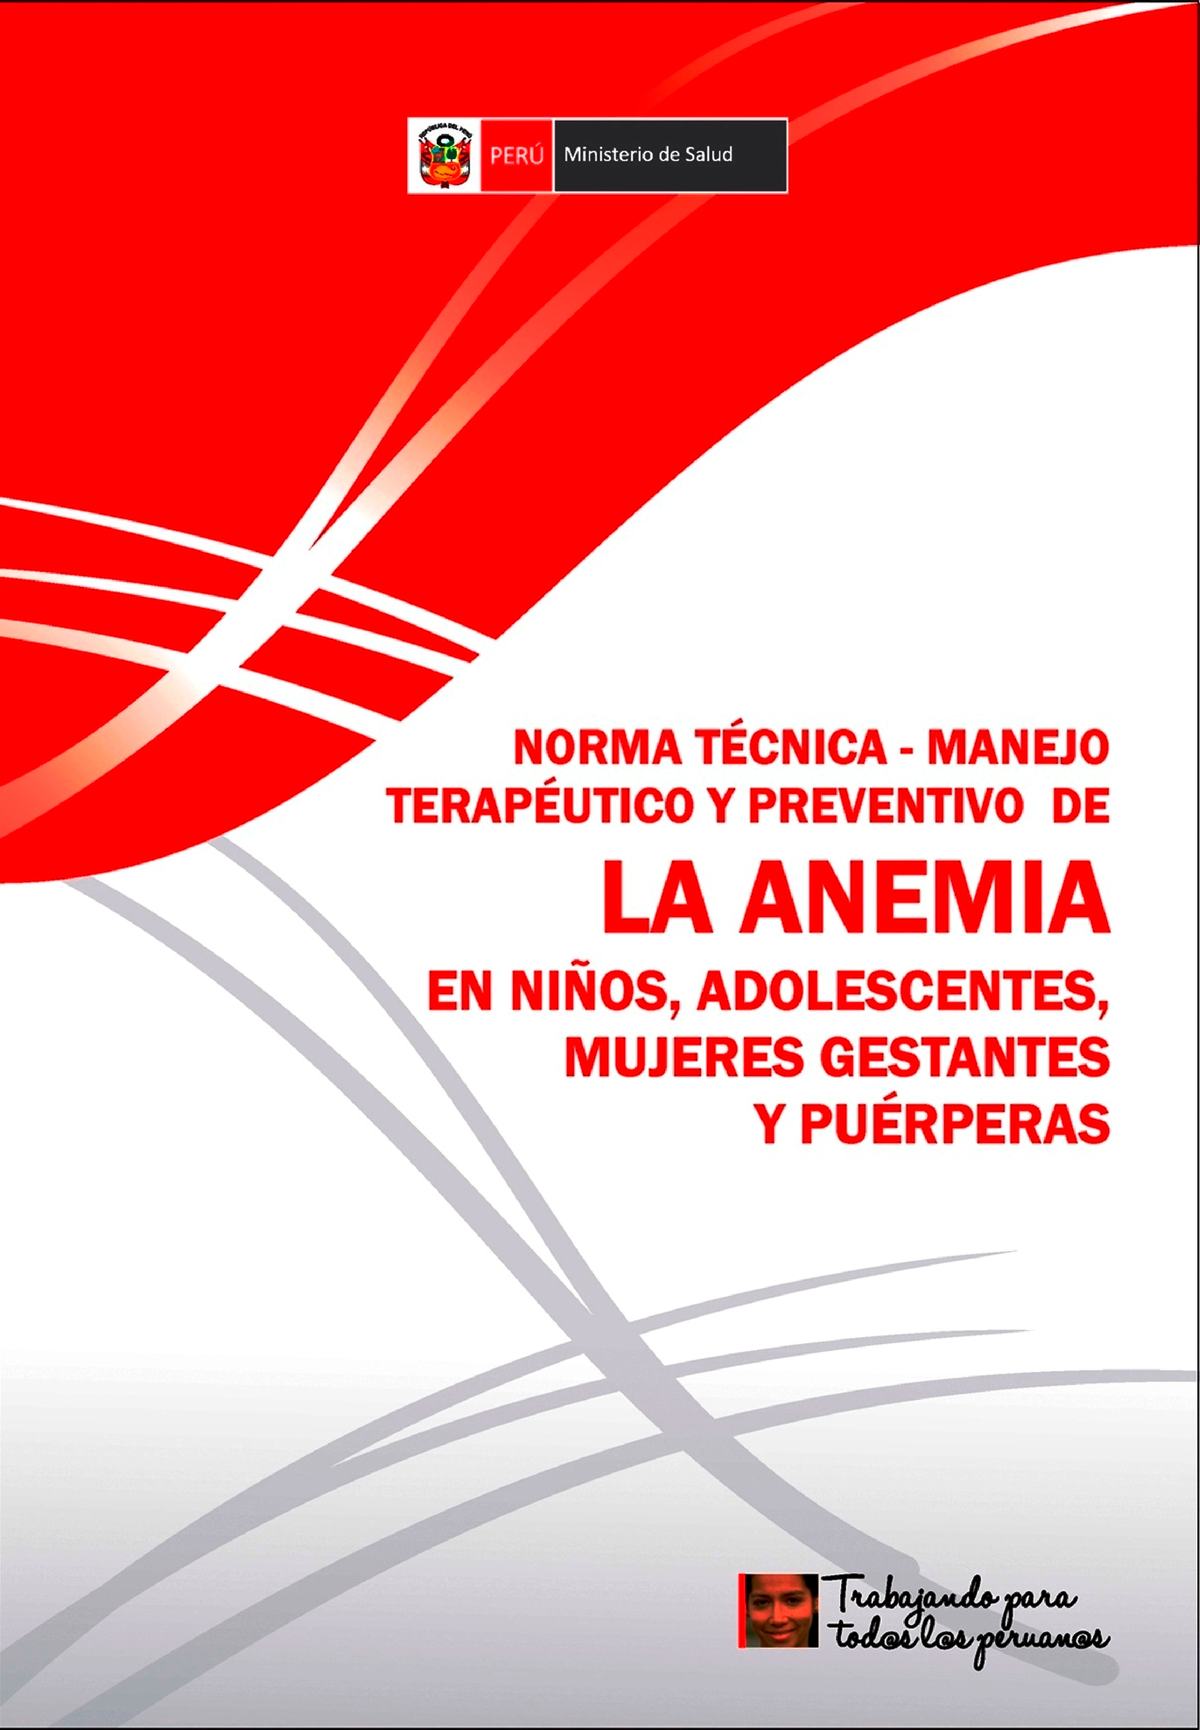 Norma Tecnica 134 Serums Norma TÉcnica Manejo TerapÉutico Y Preventivo De La Anemia En 2959